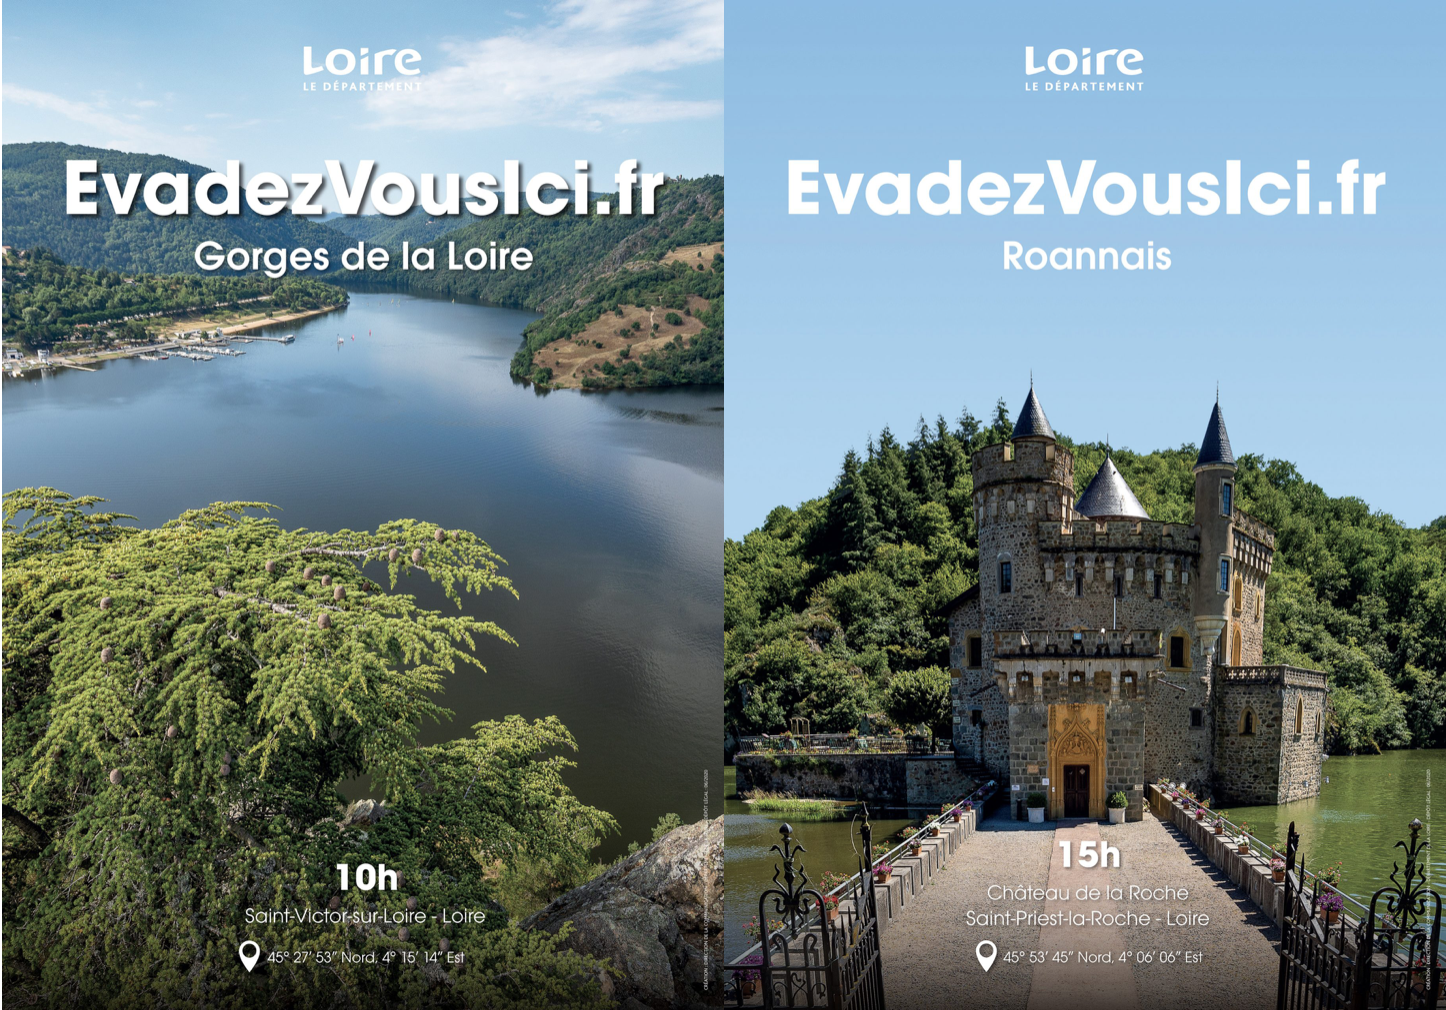 « Évadez-vous ici », le nouveau slogan touristique de la Loire